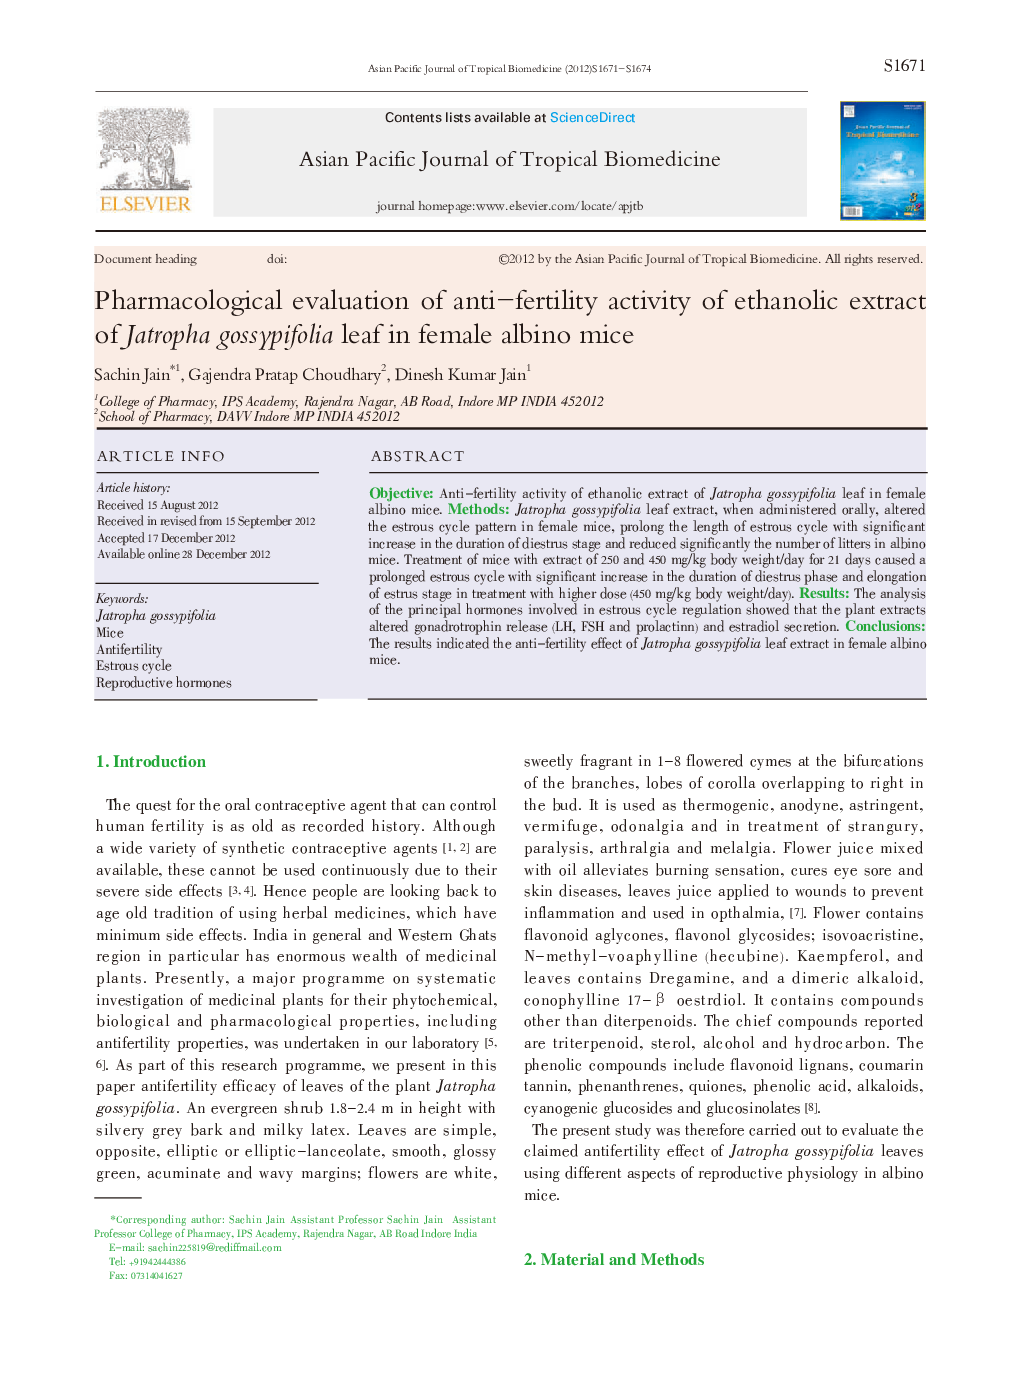 Pharmacological evaluation of anti-fertility activity of ethanolic extract of Jatropha gossypifolia leaf in female albino mice